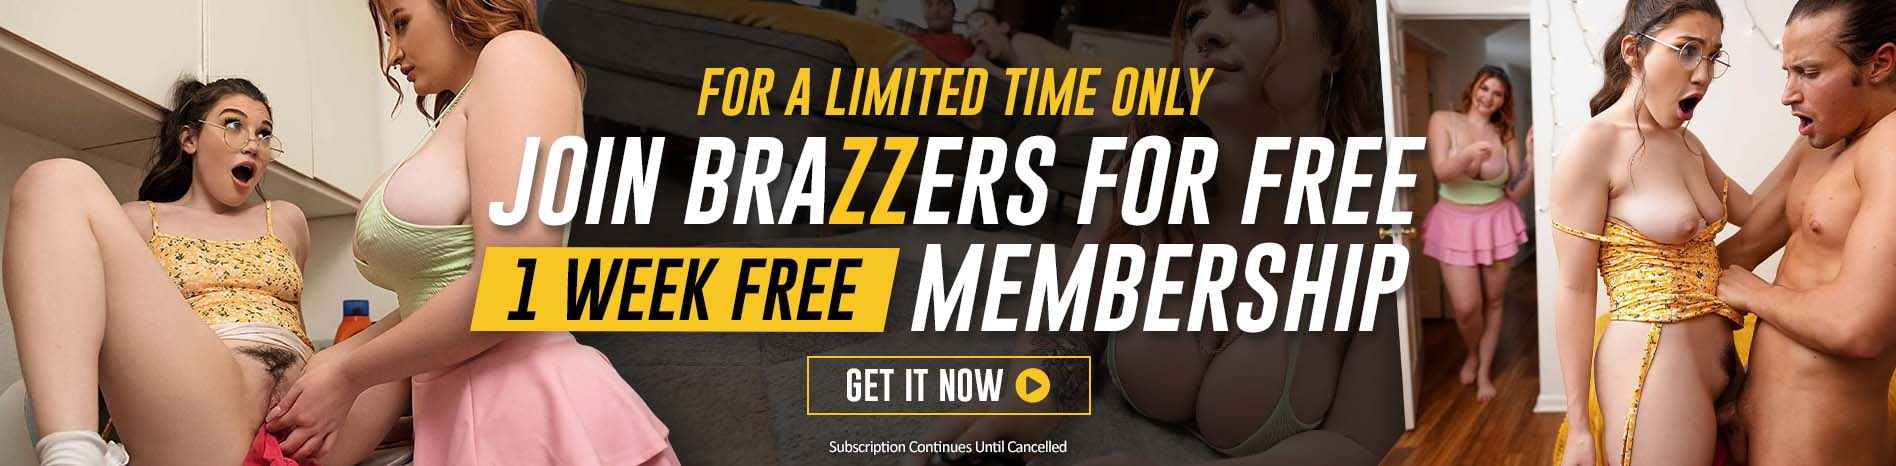 Free brazer porn